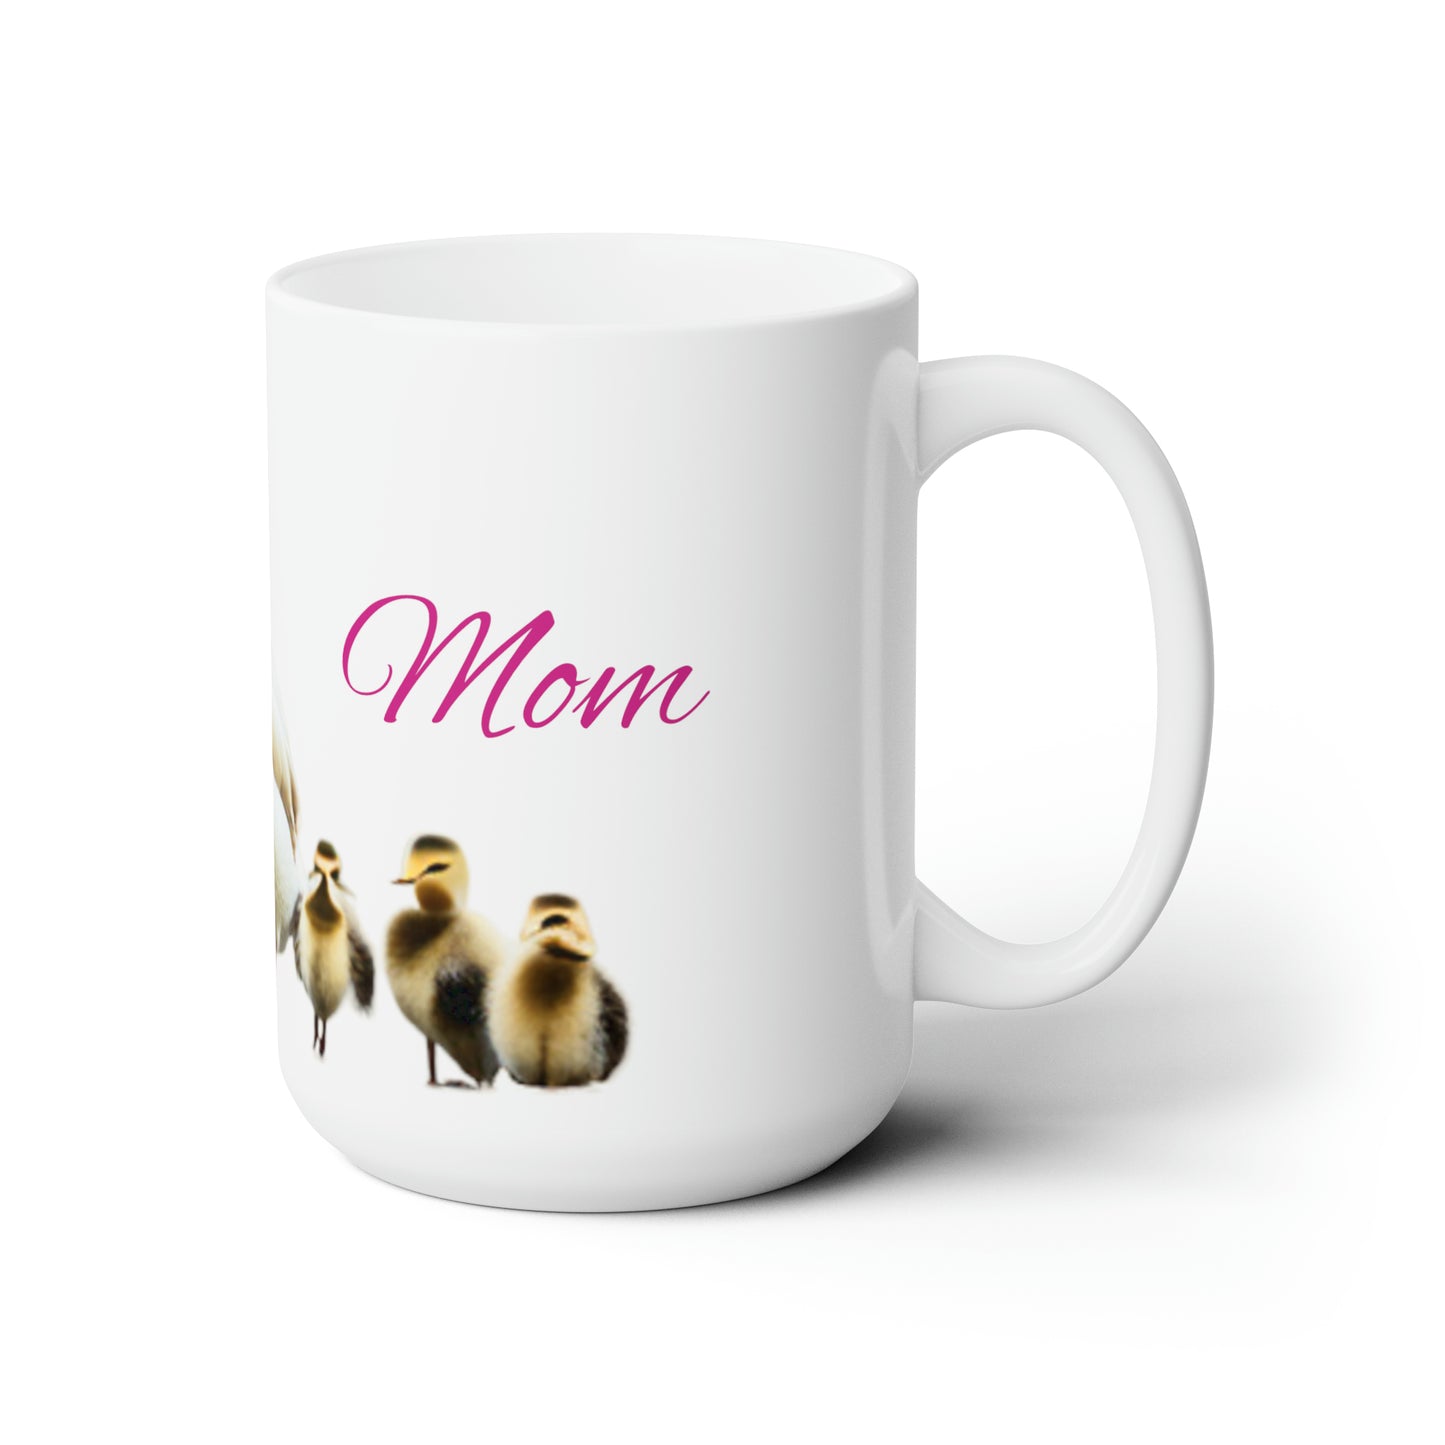 Mom's Ceramic Mug 15oz